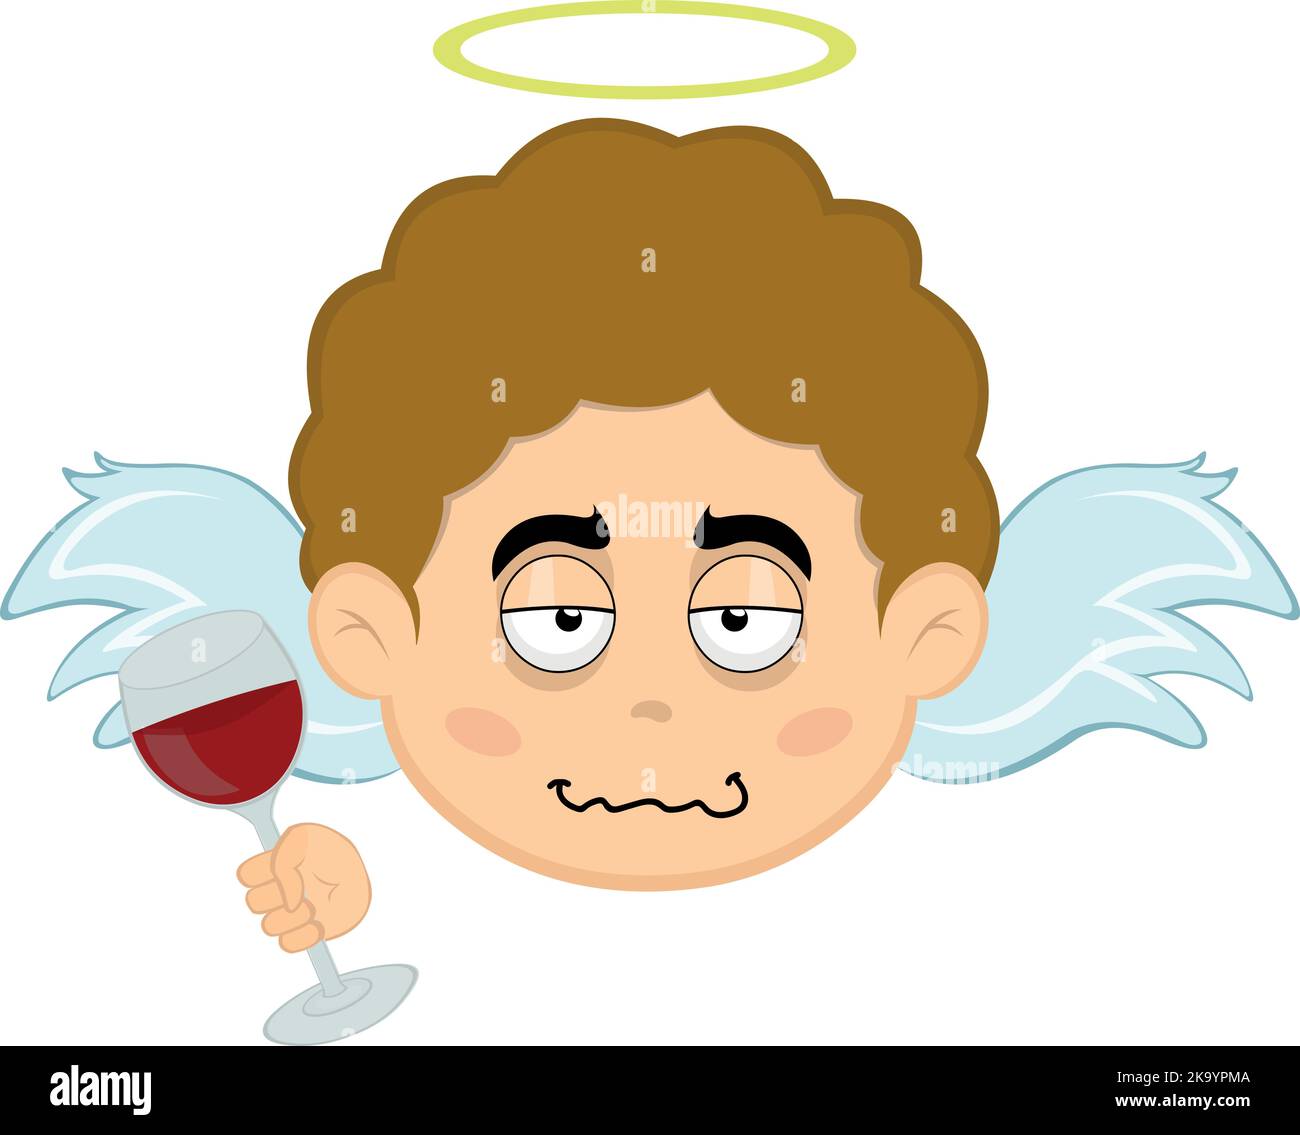 Vektor-Illustration eines betrunkenen Zeichentrickengels mit einem Glas Wein in der Hand Stock Vektor